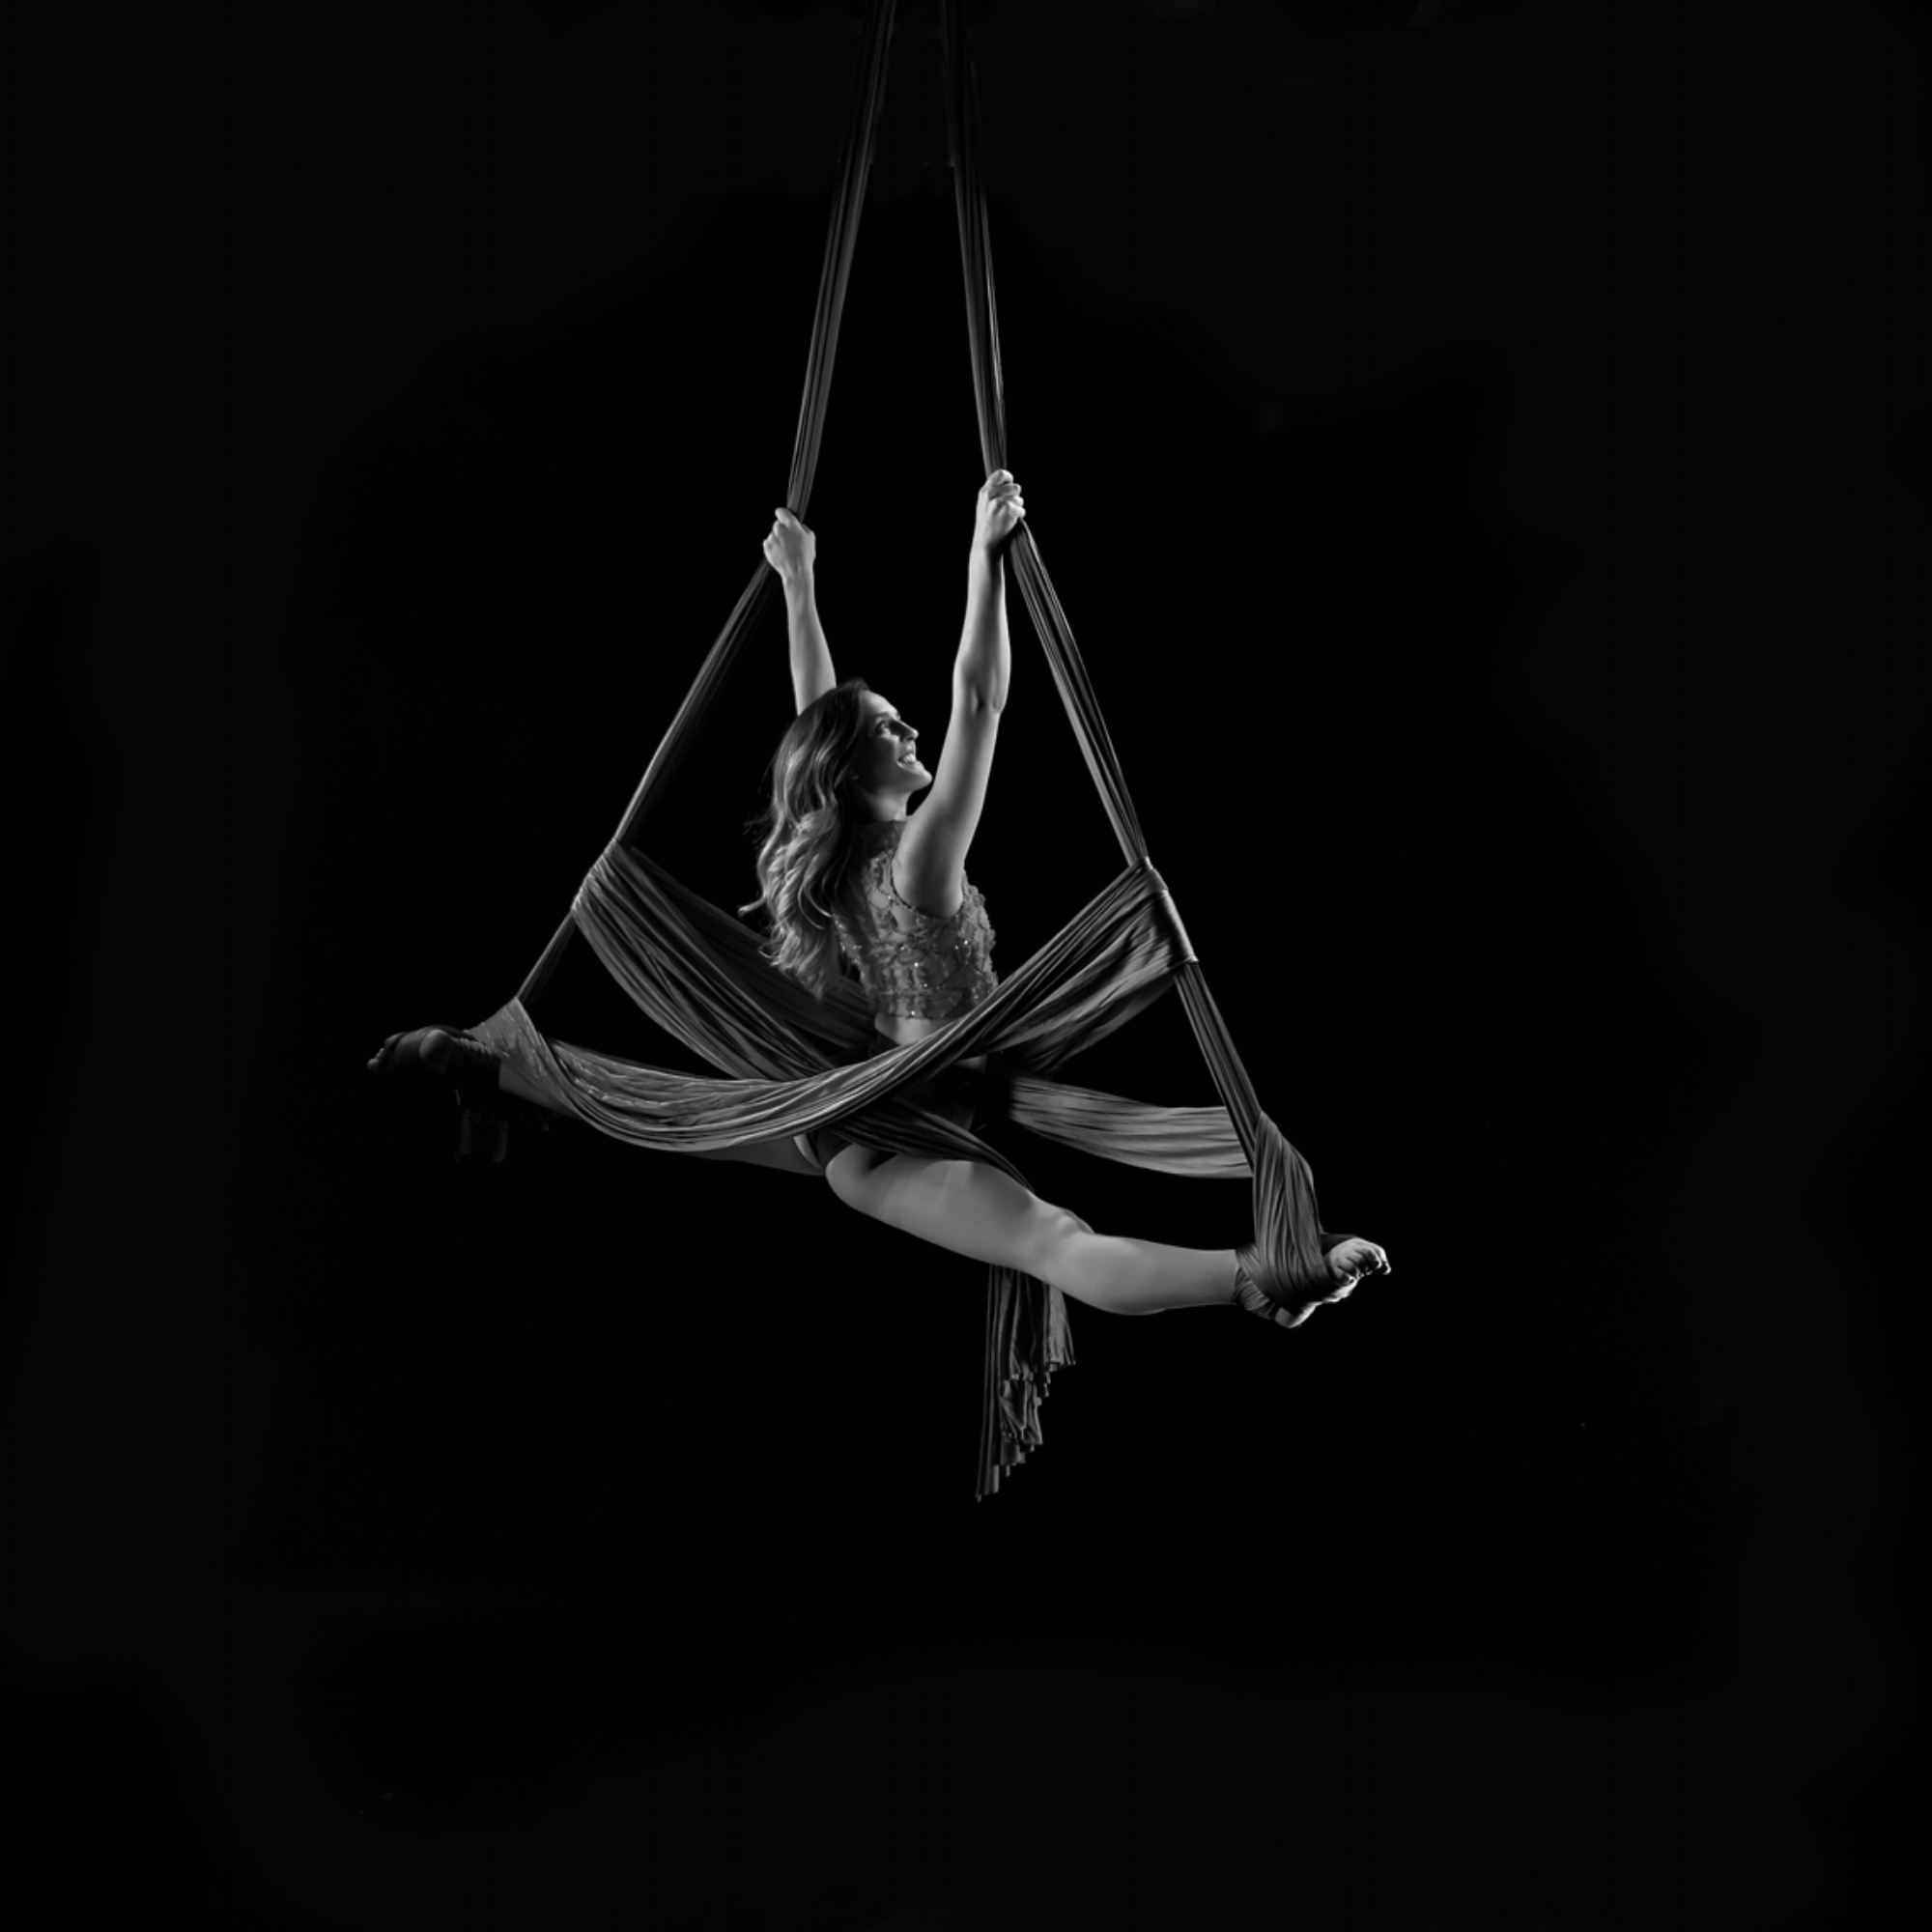 Aerial Silks: Monochrome circus performance, A professional aerialist in the air. 2000x2000 HD Wallpaper.